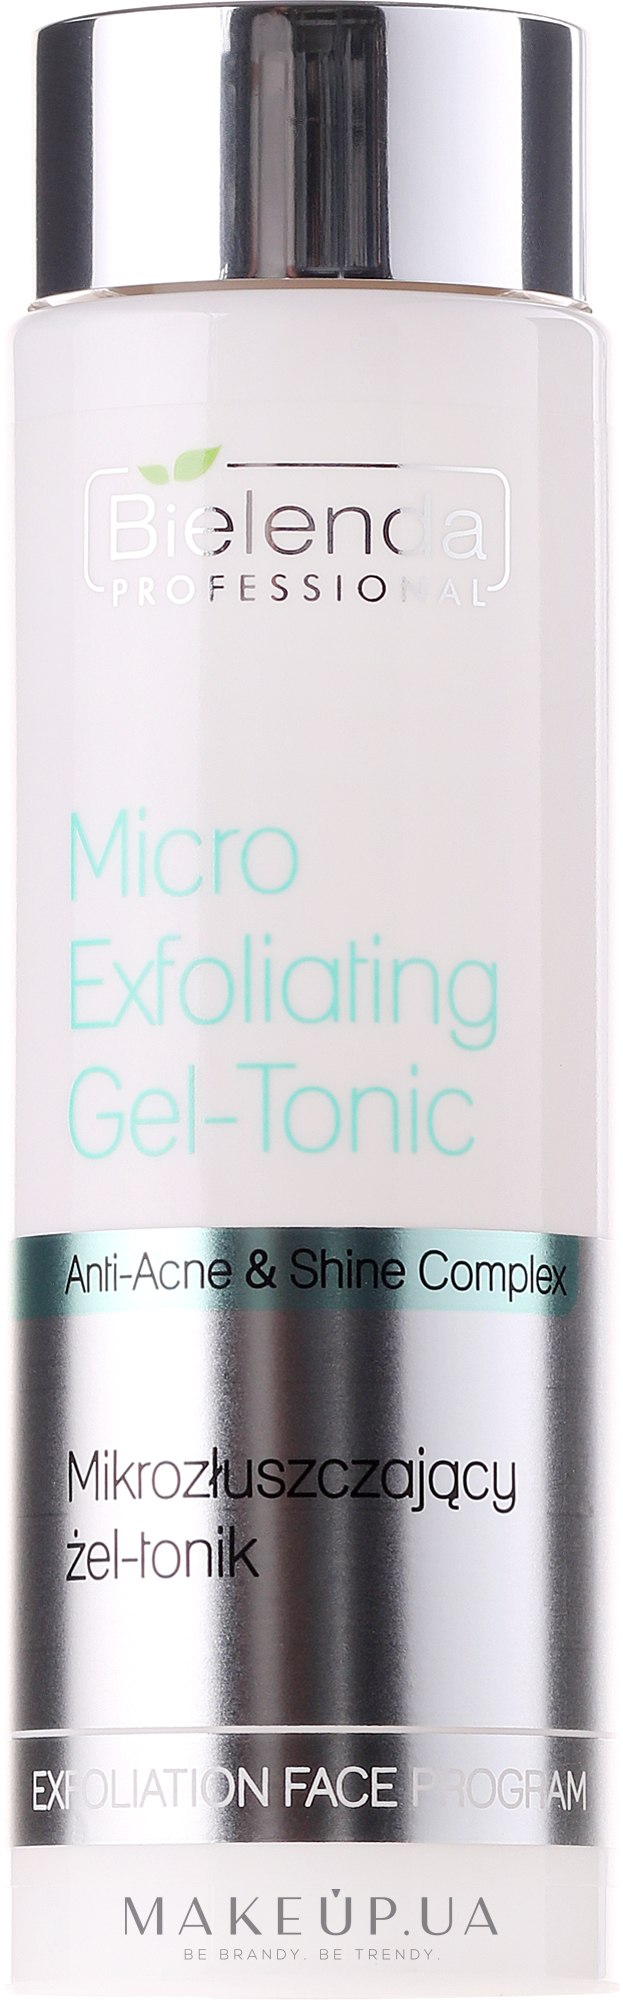 Микроотшелушивающий гель-тоник - Bielenda Professional Face Program Micro-Exfoliating Gel-Tonic — фото 200g